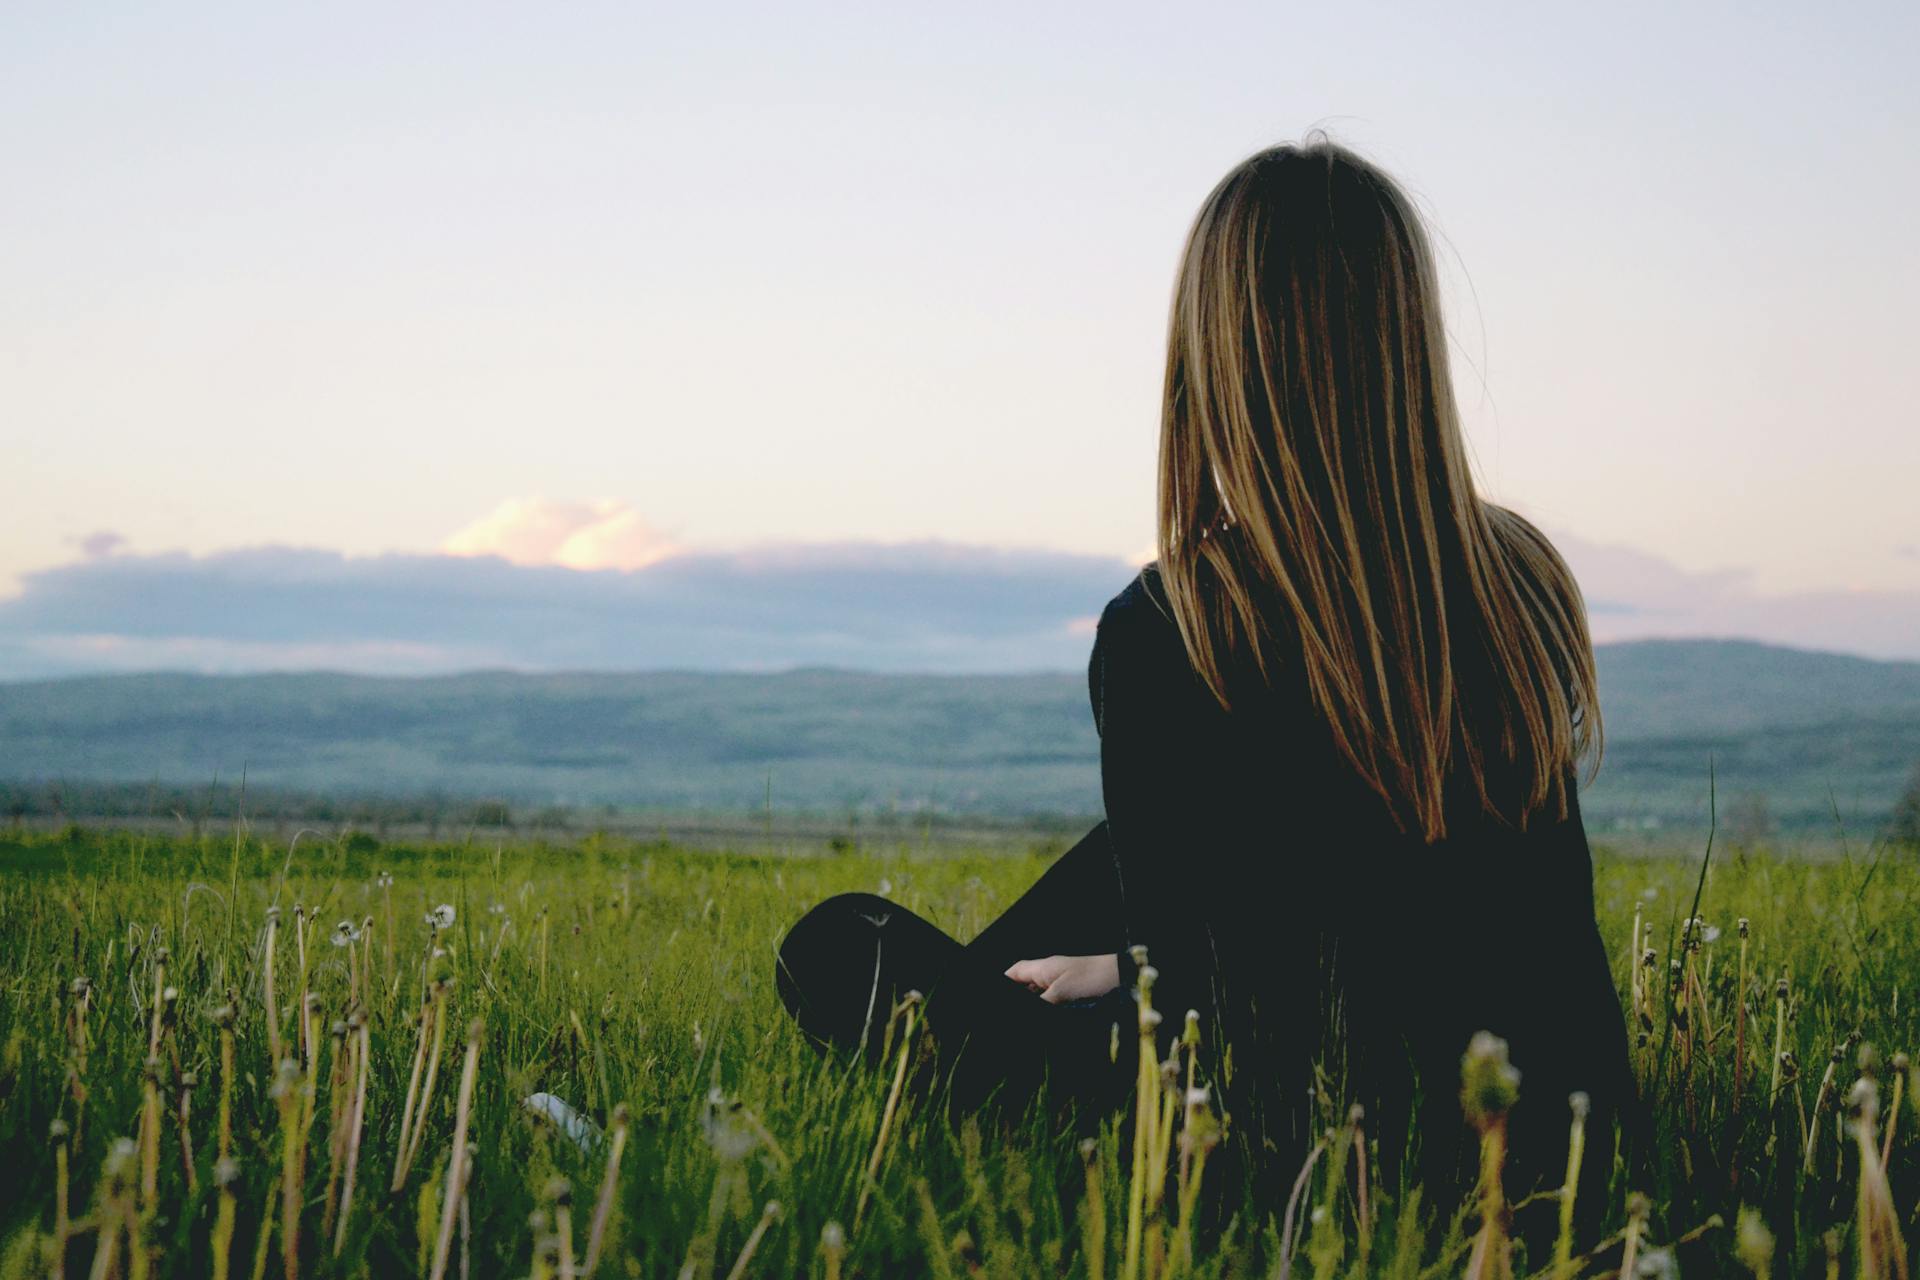 Eine Frau, die auf einem grasbewachsenen Feld sitzt | Quelle: Pexels